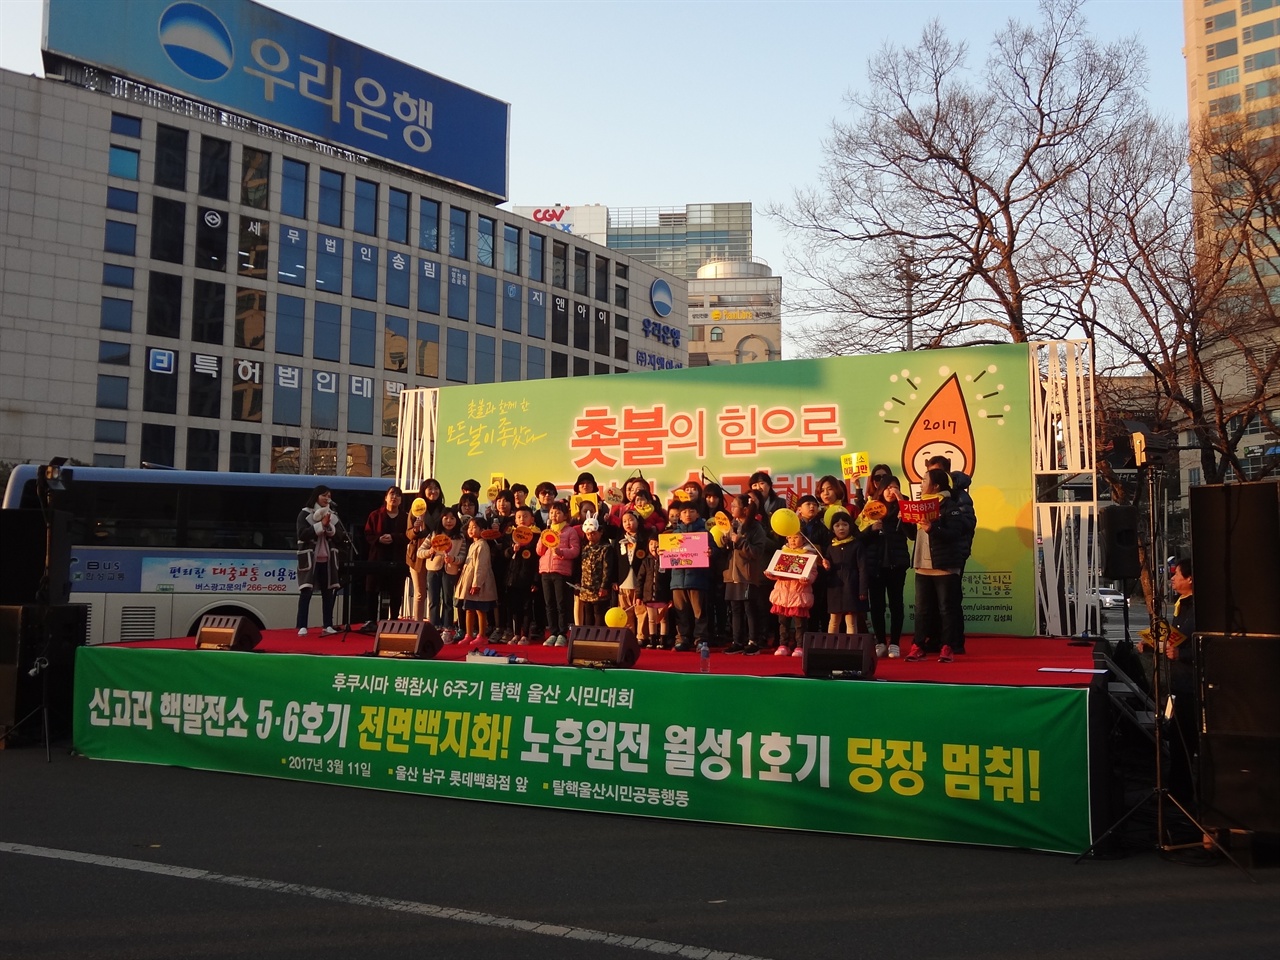 2017년 3월 11일 <탈핵울산시민대회>중에서 어린이 합창 공연을 하였다.